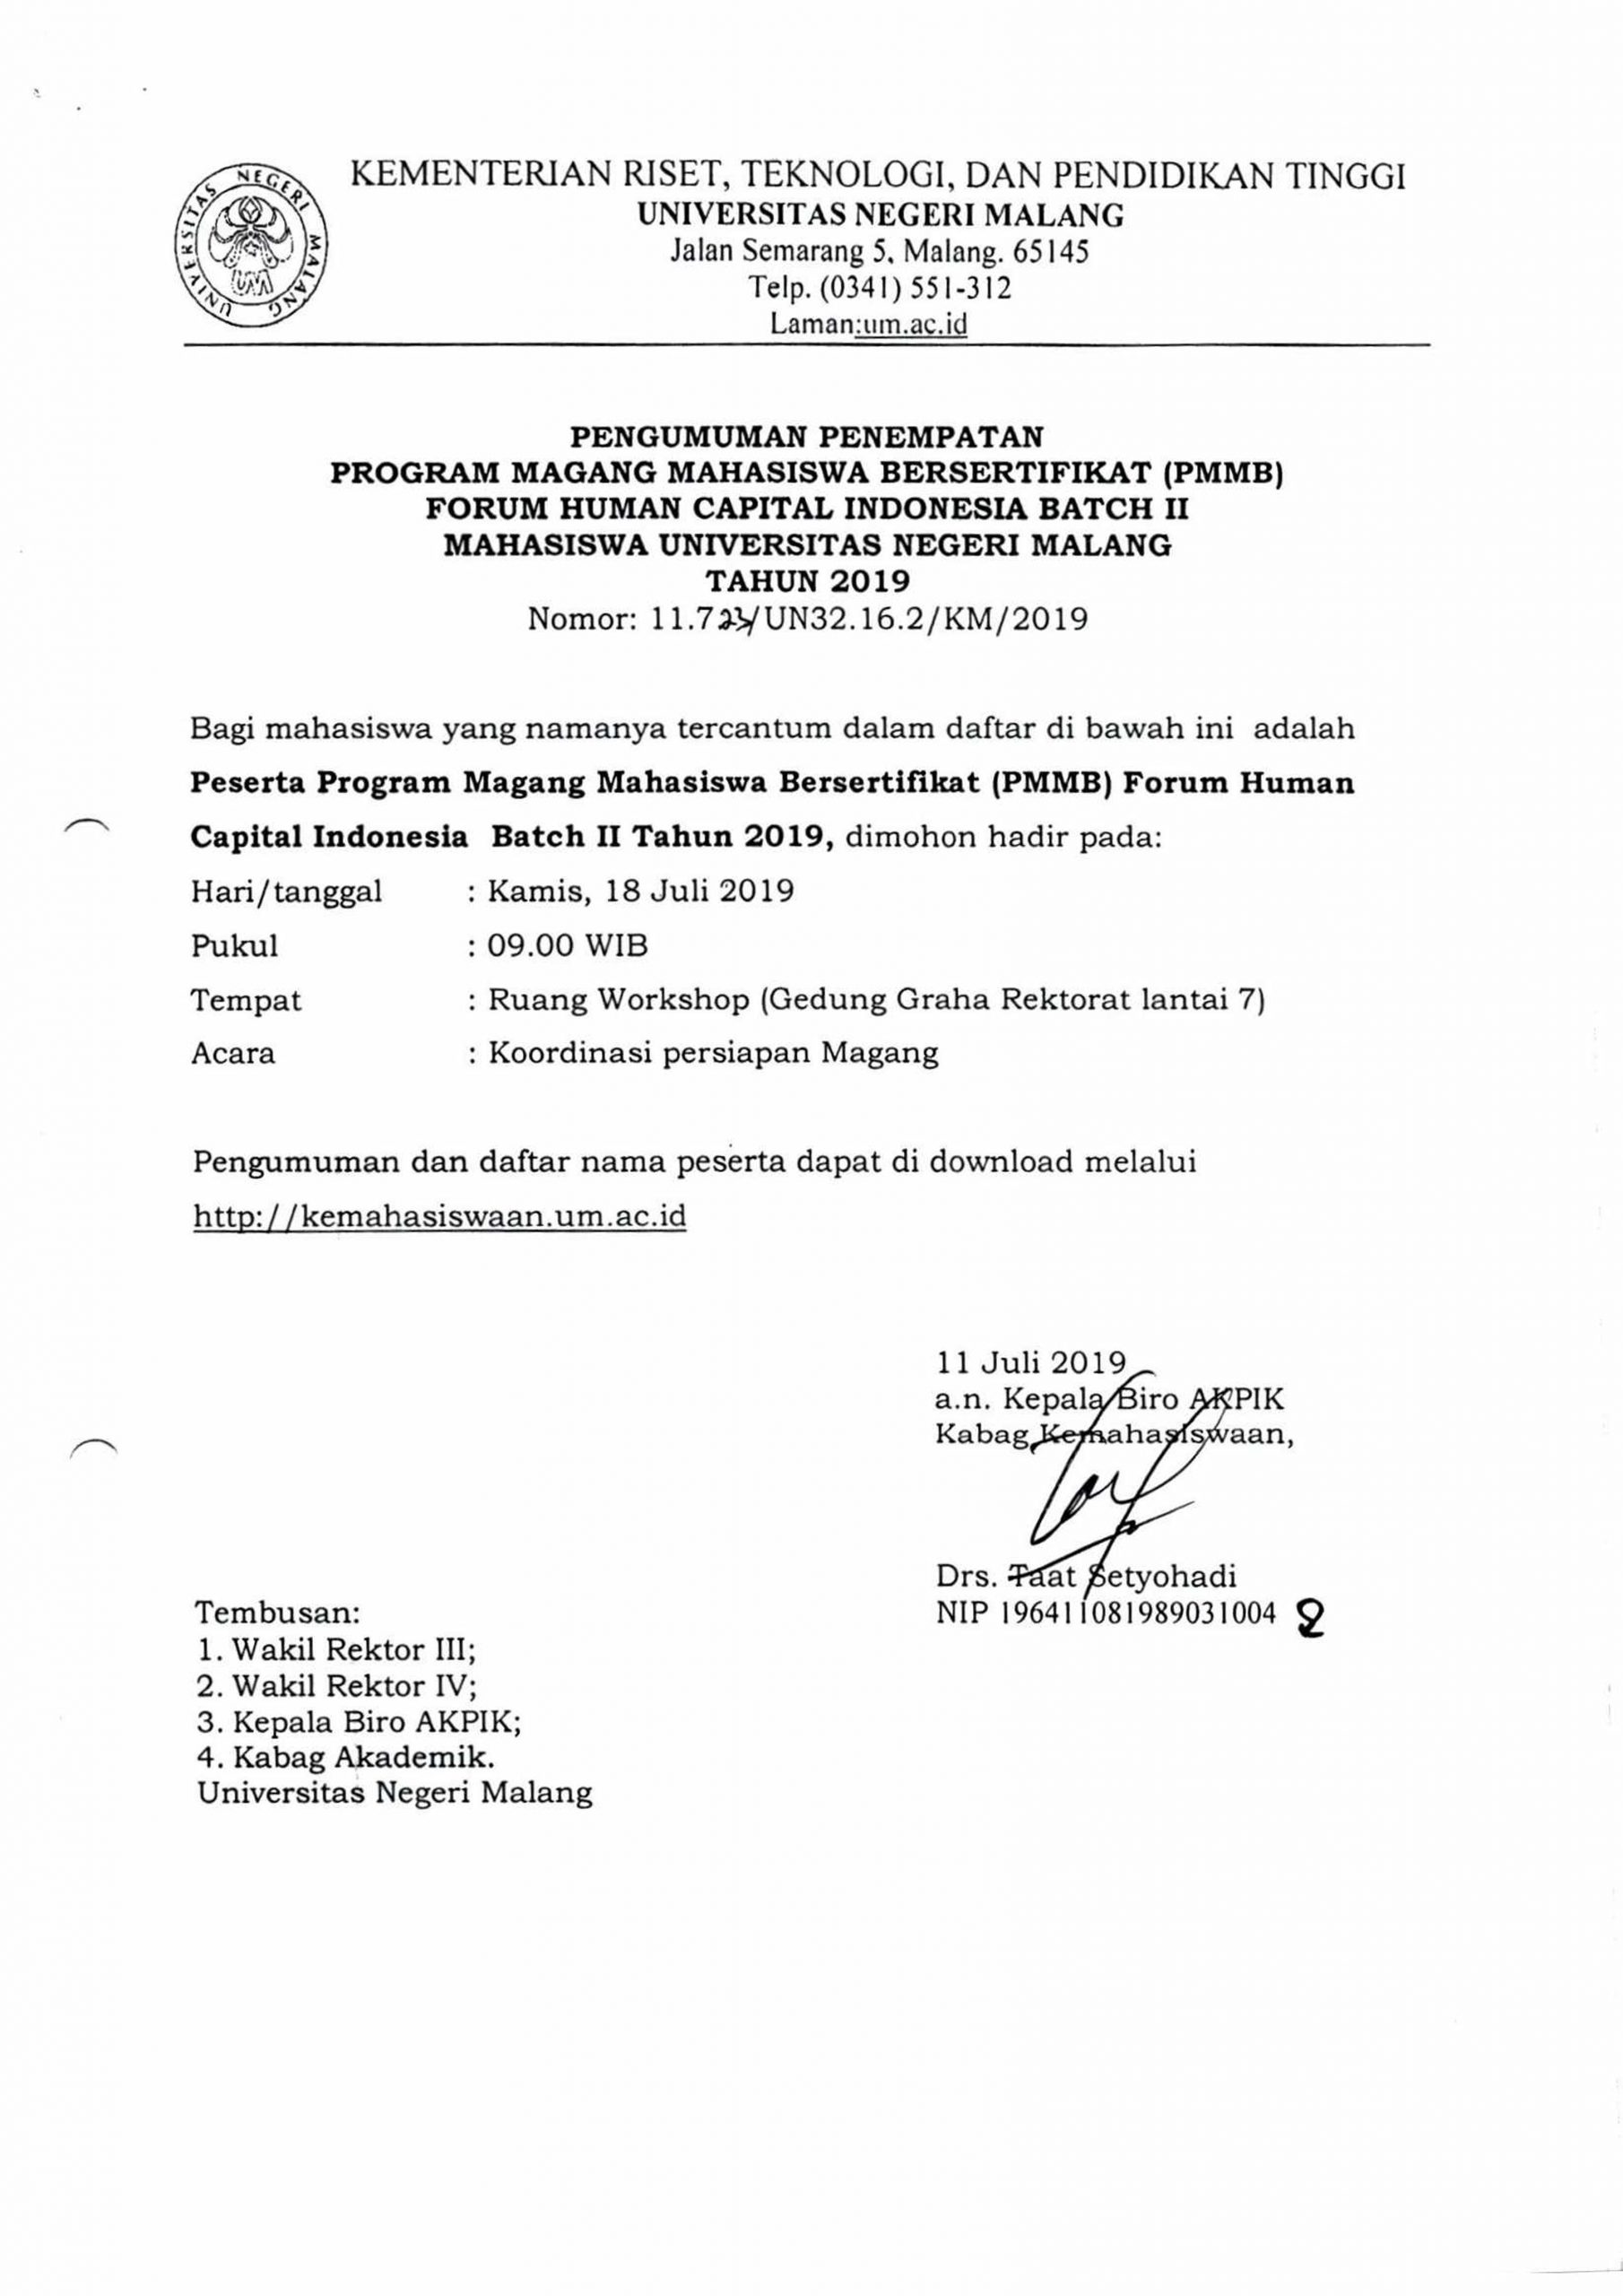 PENGUMUMAN PENEMPATAN PROGRAM MAGANG MAHASISWA BERSERTIFIKAT (PMMB) FORUM HUMAN CAPITAL INDONESIA BATCH II MAHASISWA UNIVERSITAS NEGERI MALANG TAHUN 2019